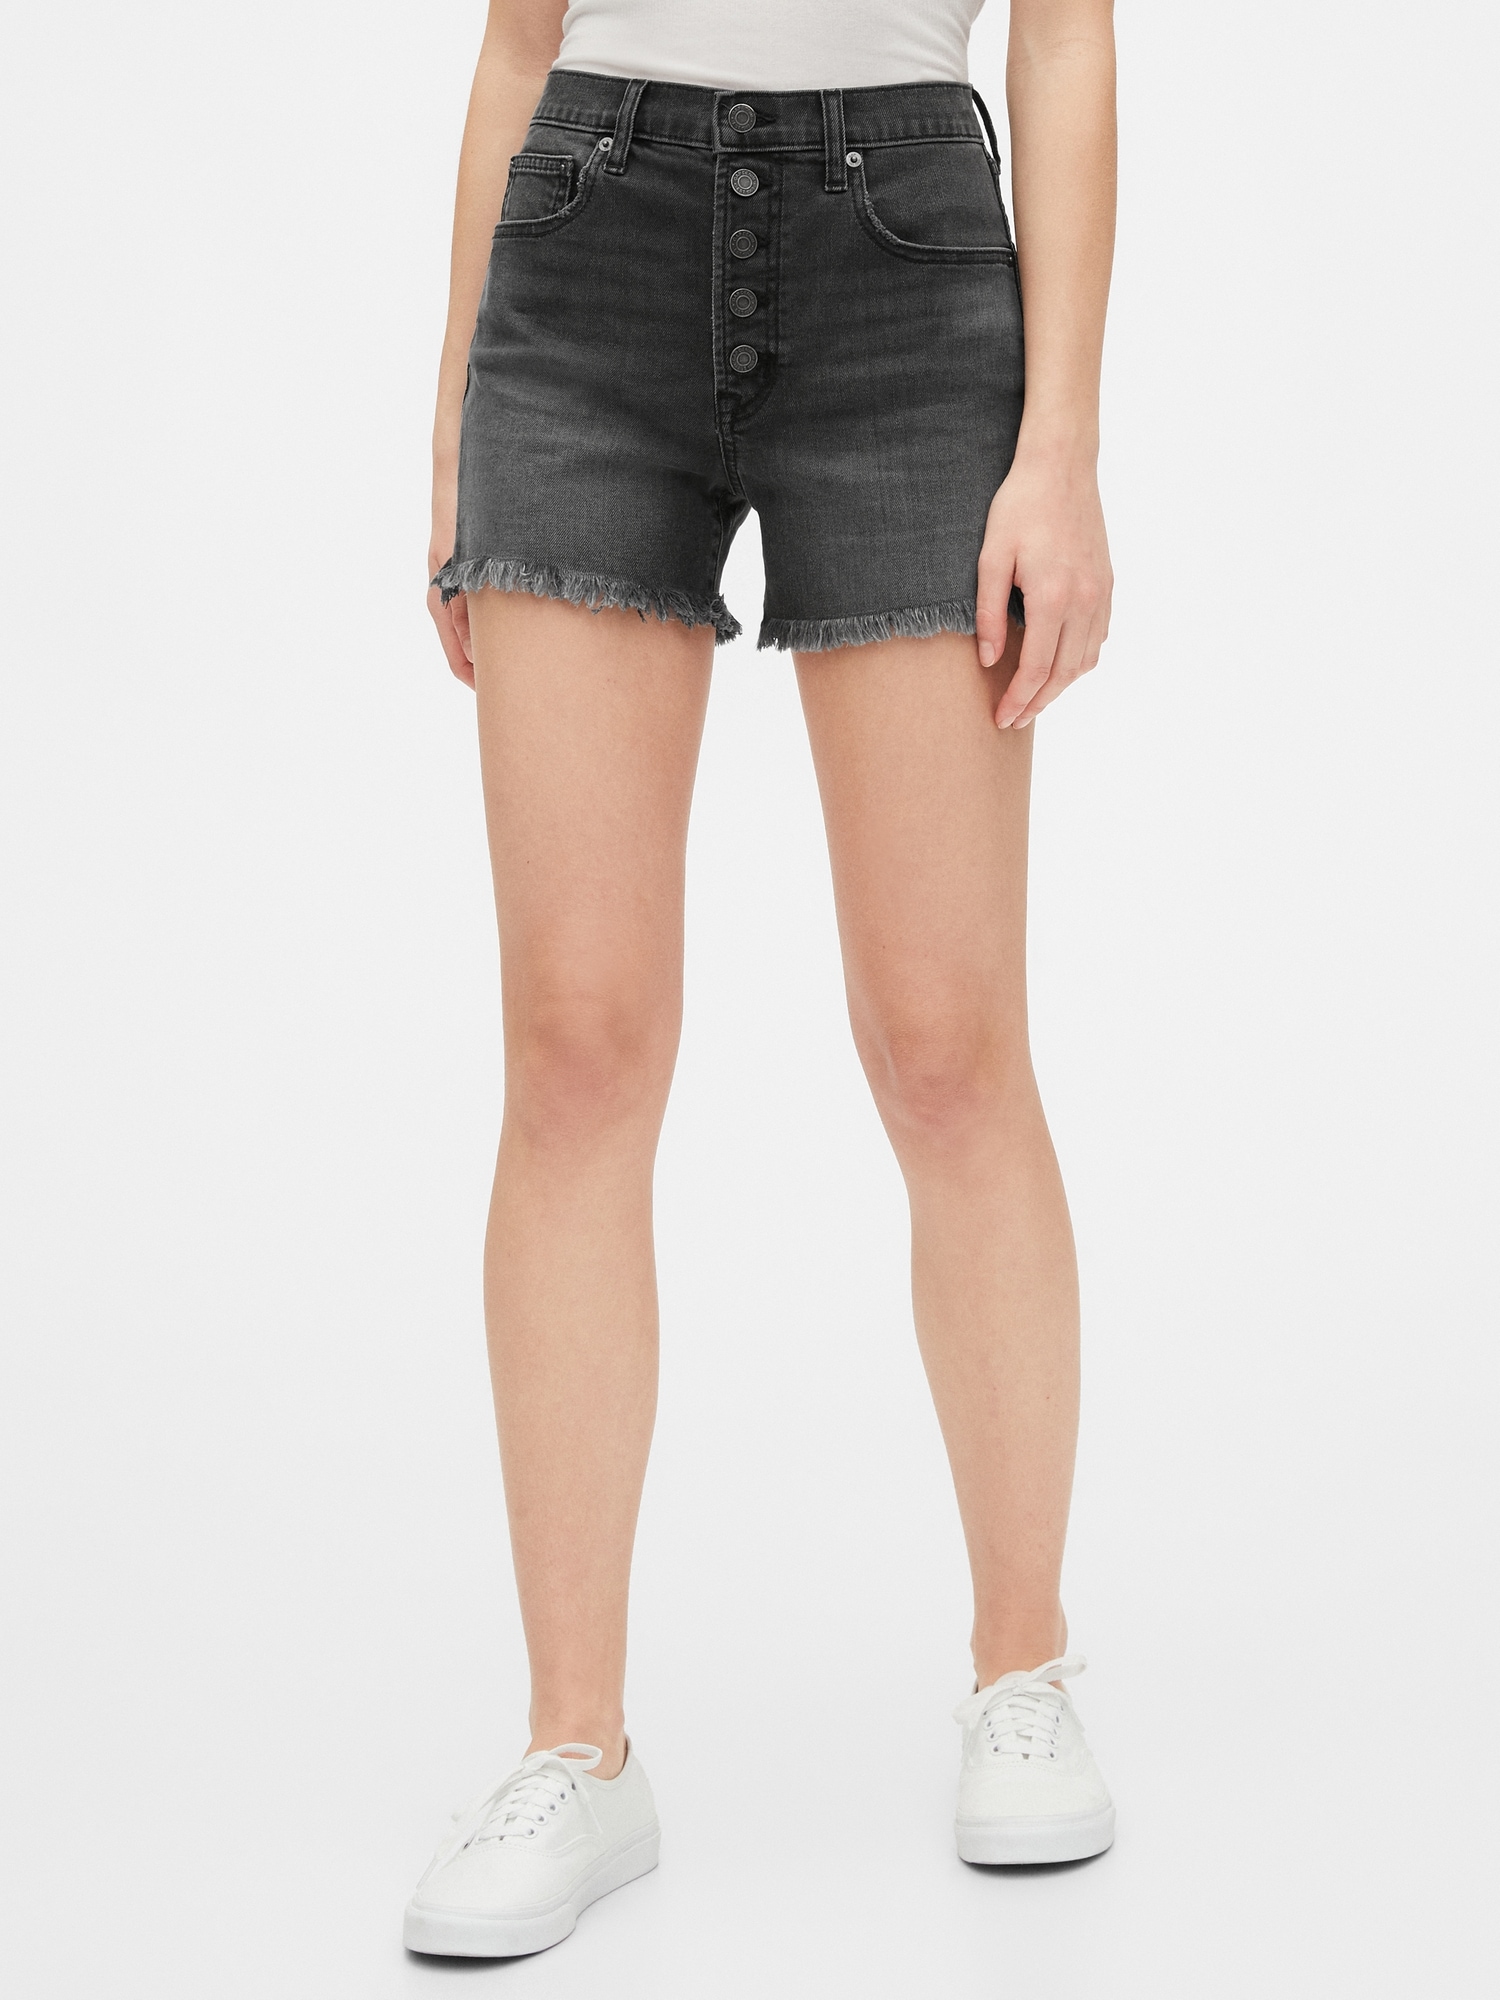 black denim jean shorts